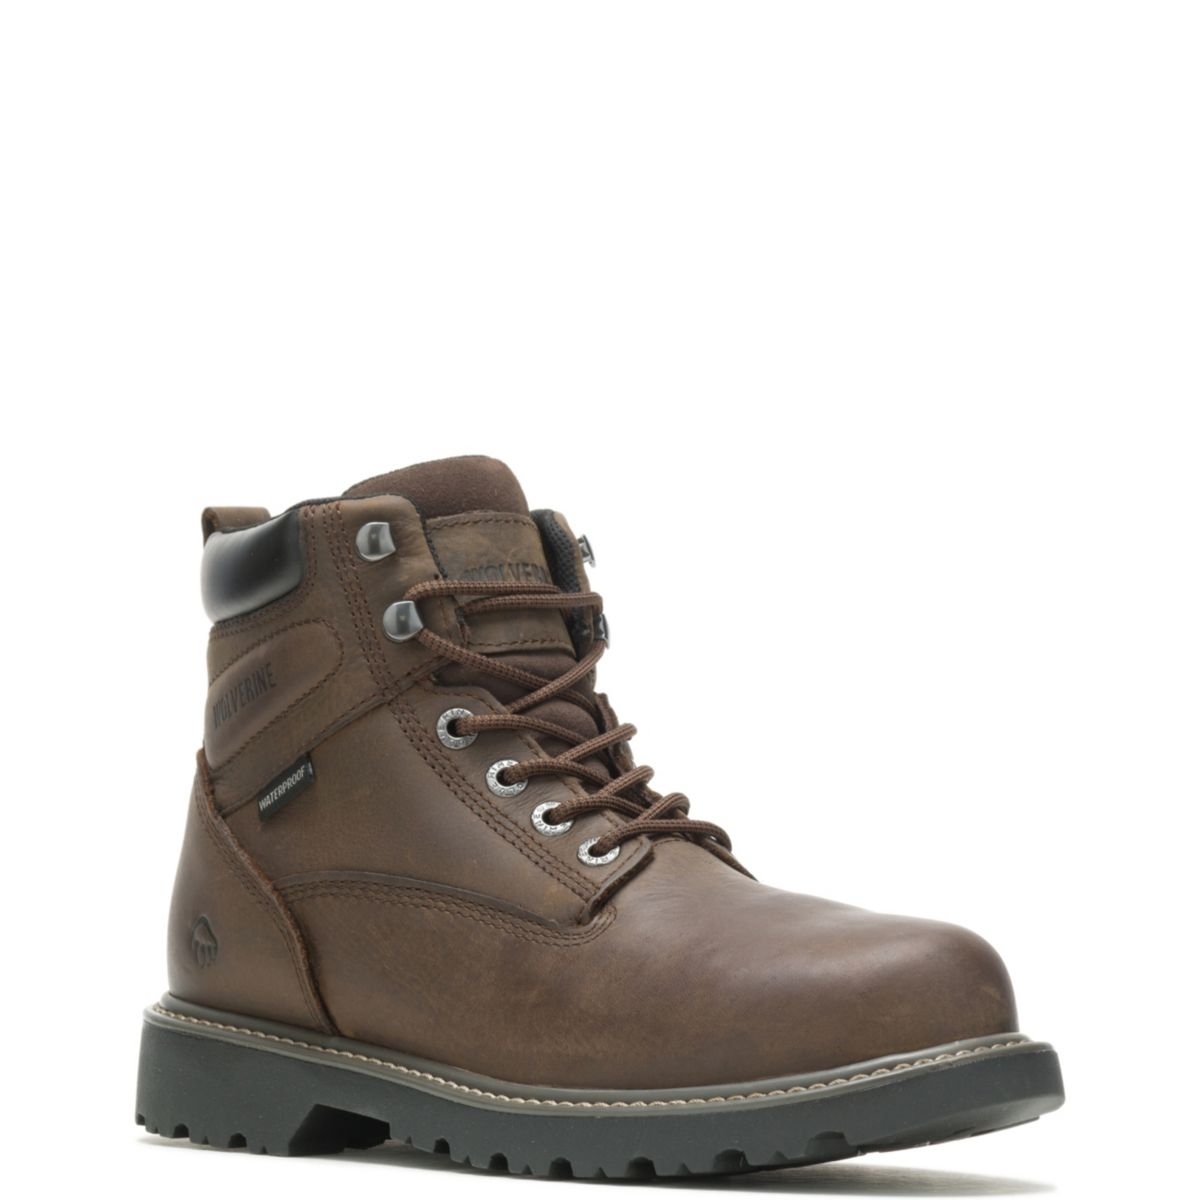 WOLVERINE Men's Floorhand 6 Waterproof Steel Toe Work Boot Dark Brown - W10633 DARK BROWN - DARK BROWN, 9